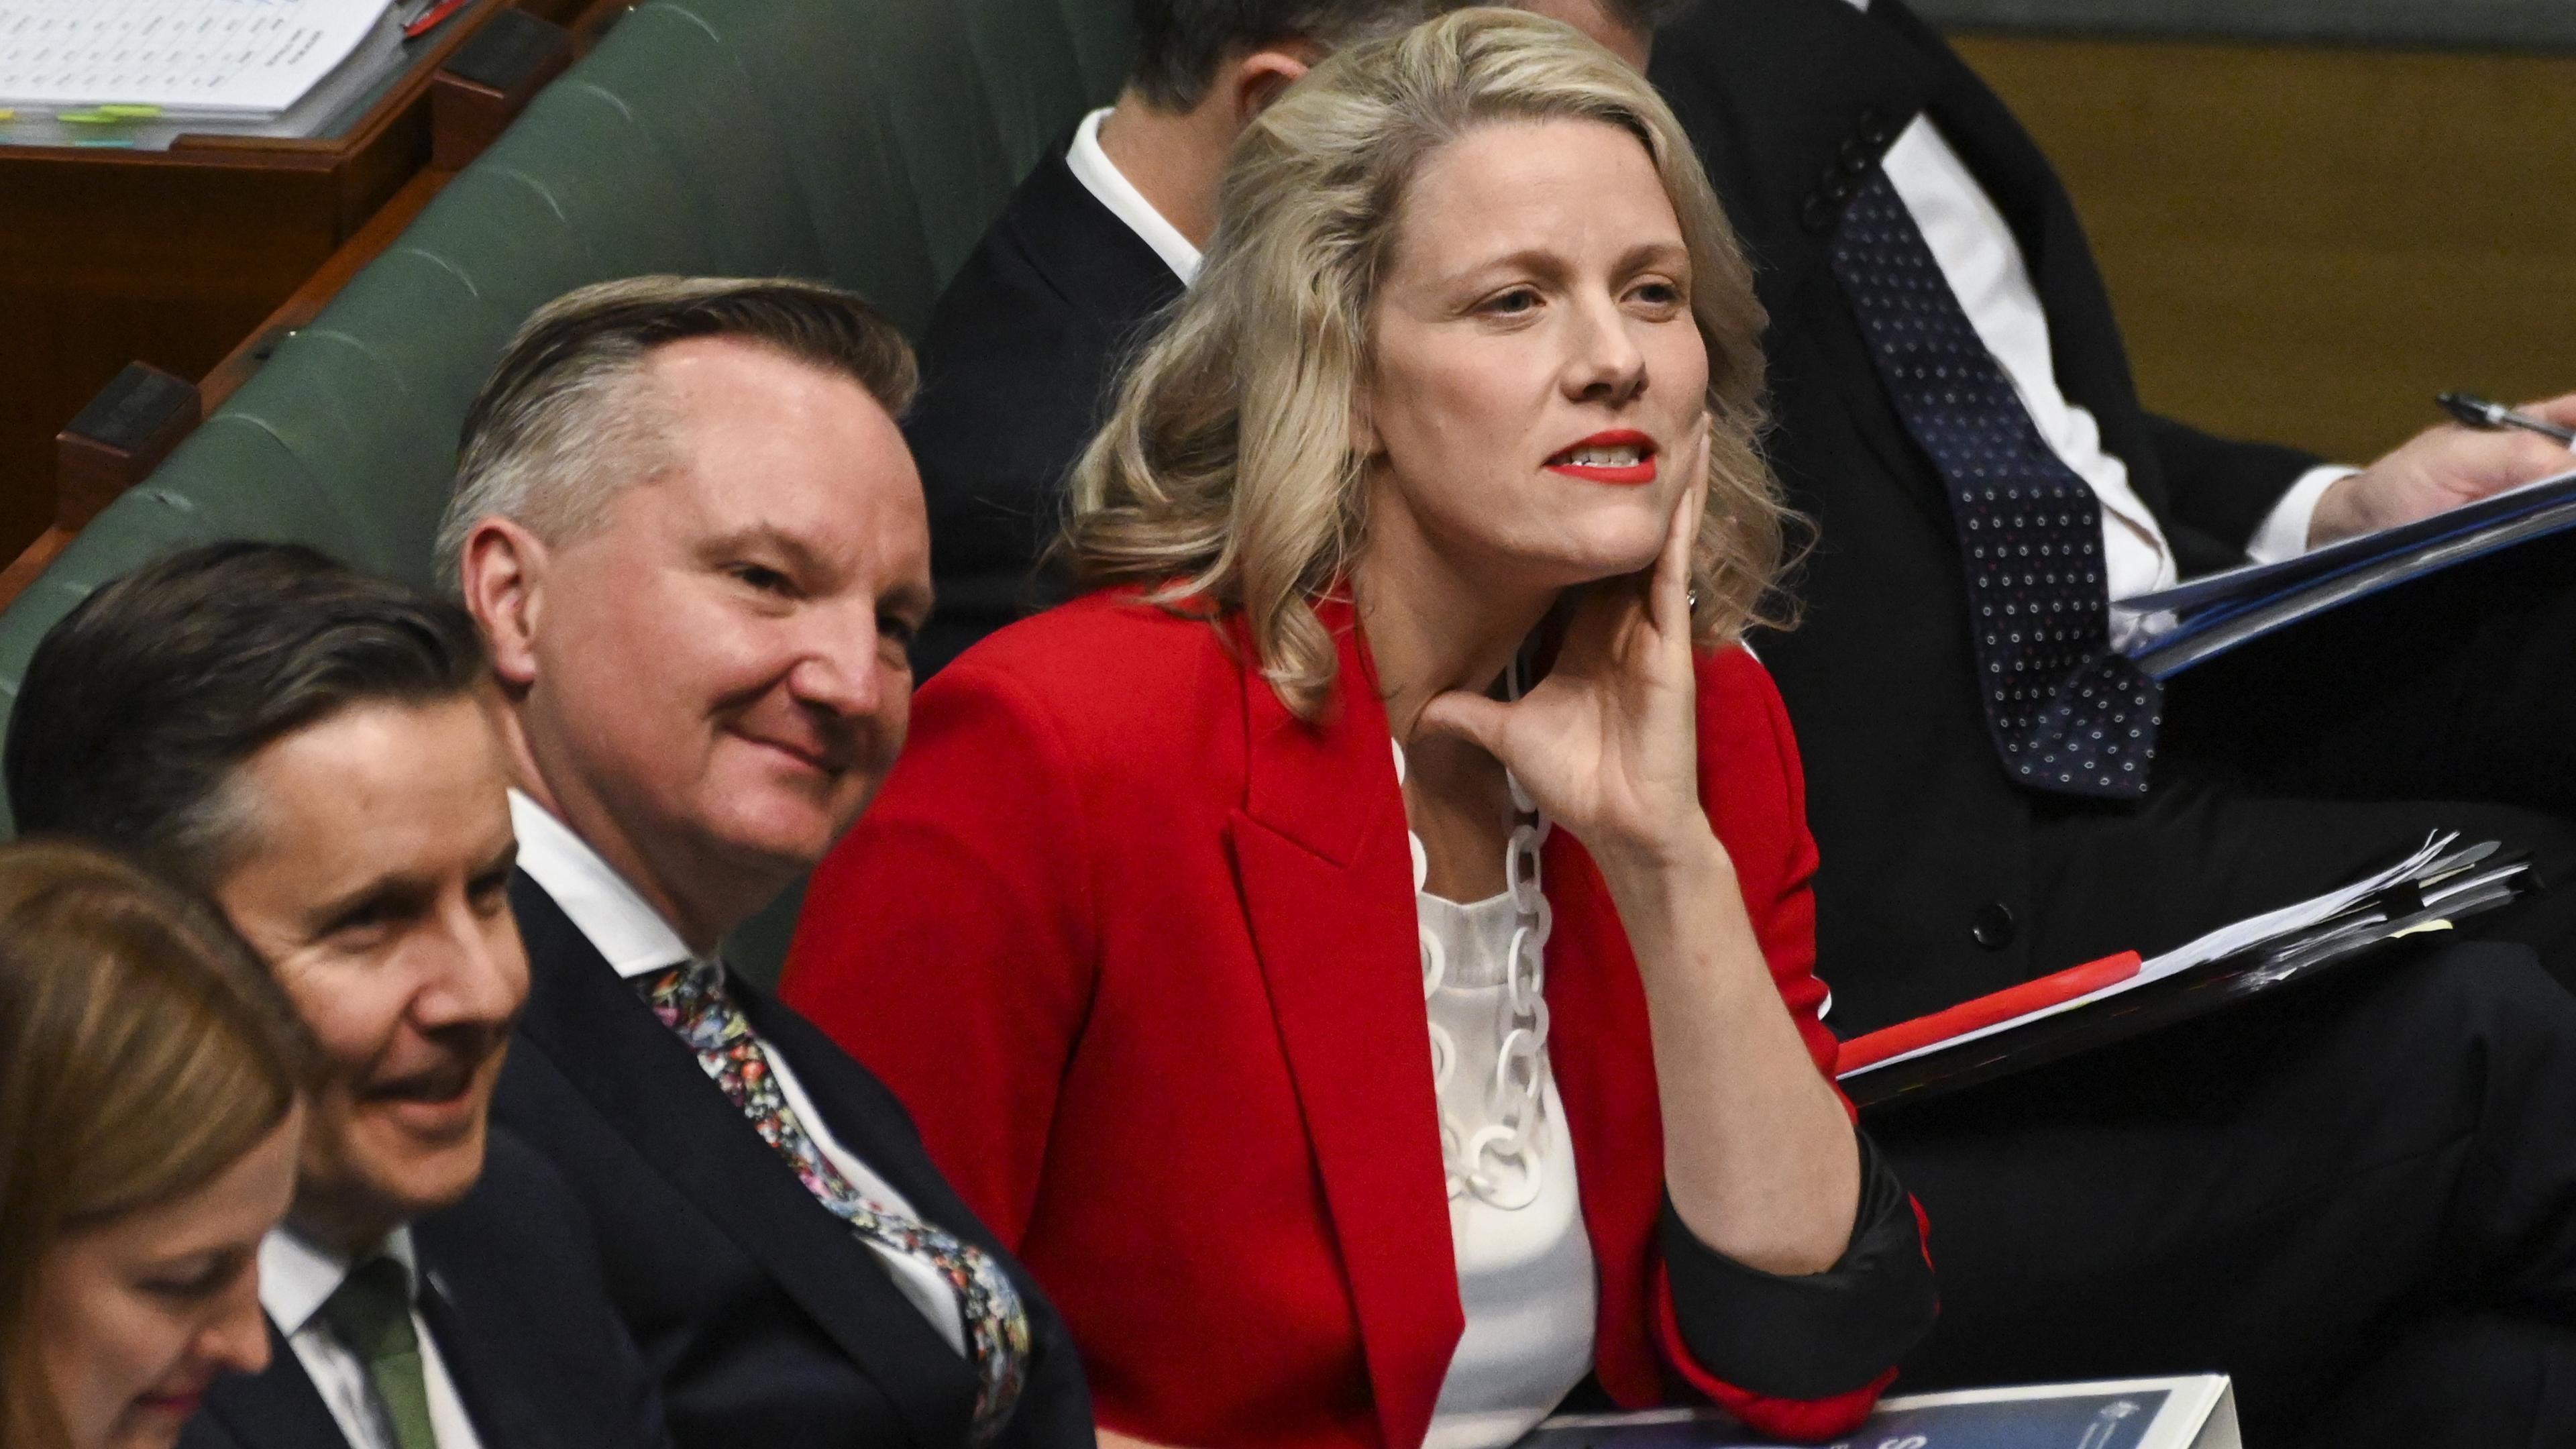 Australiens inrikesminister Clare O’Neil under en frågestund i Australiens parlament. O’Neil har försvarat den hårt kritiserade utredningen. Foto: Martin Ollman/Getty Images